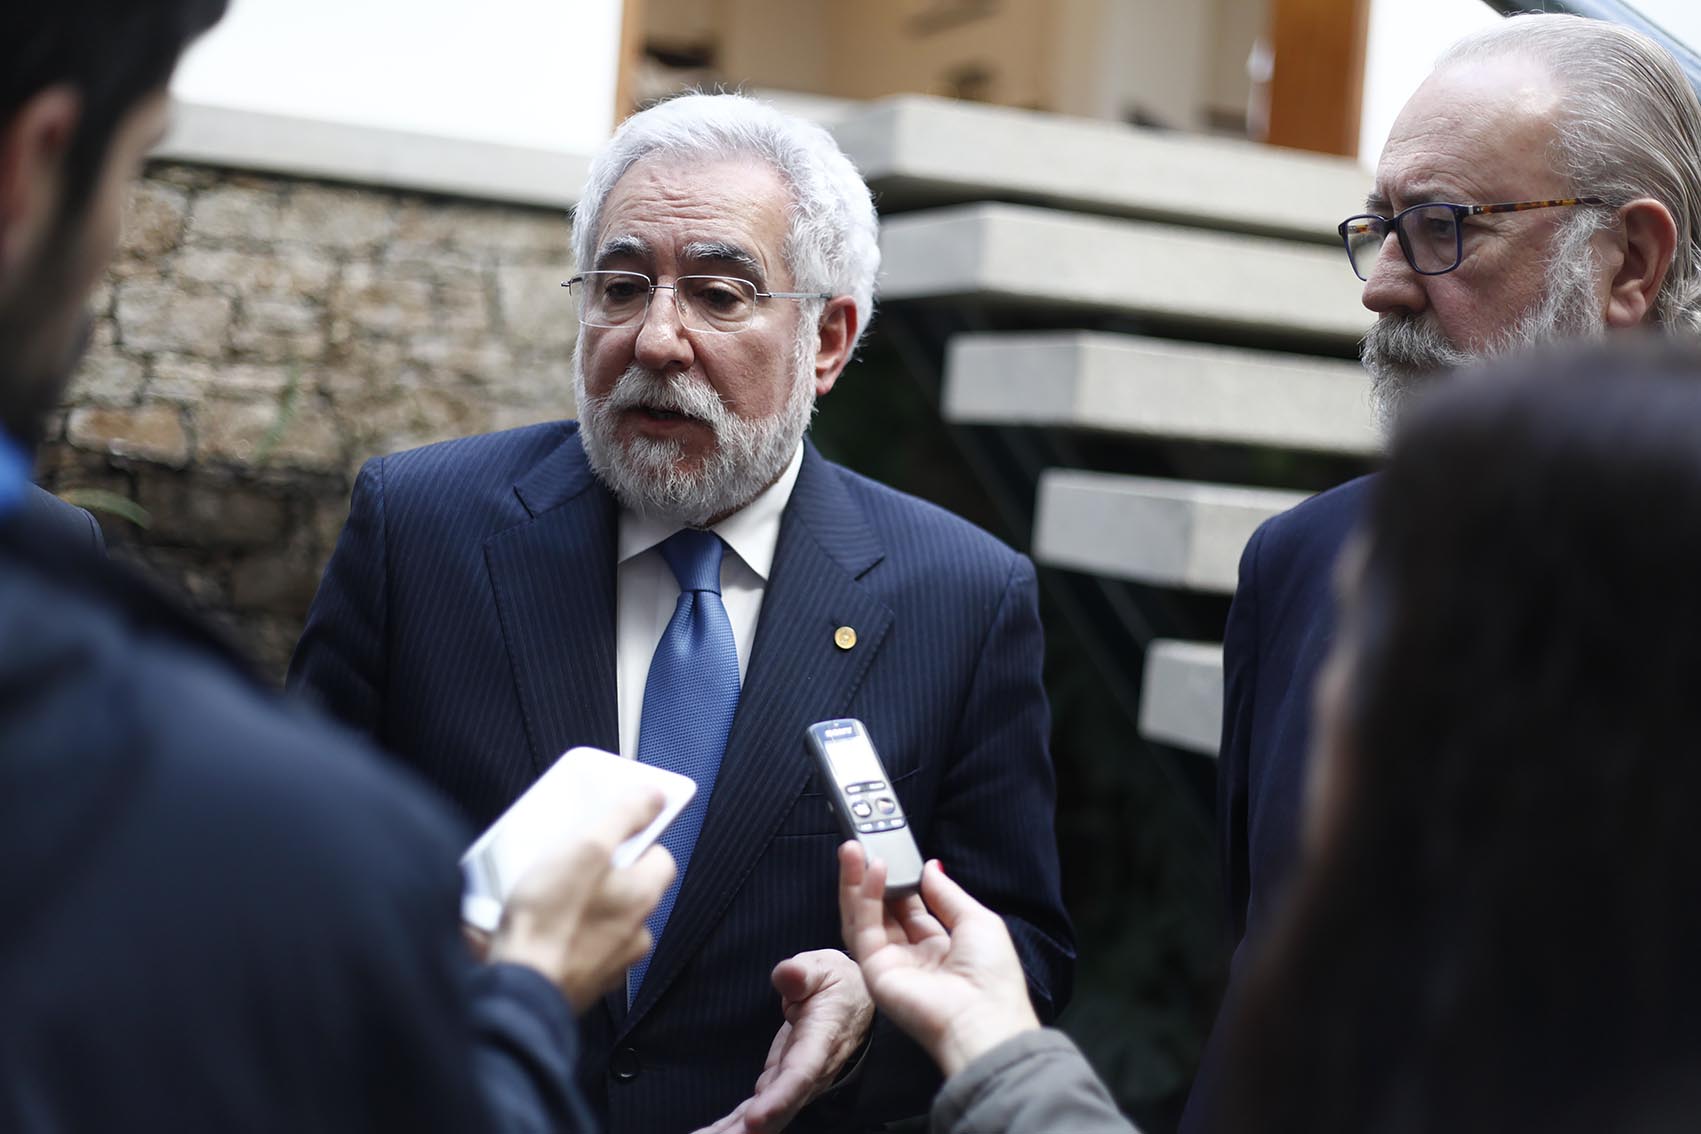 O presidente do Parlamento de Galicia participou nun xantar-coloquio no Club Financiero Atlántico da Coruña